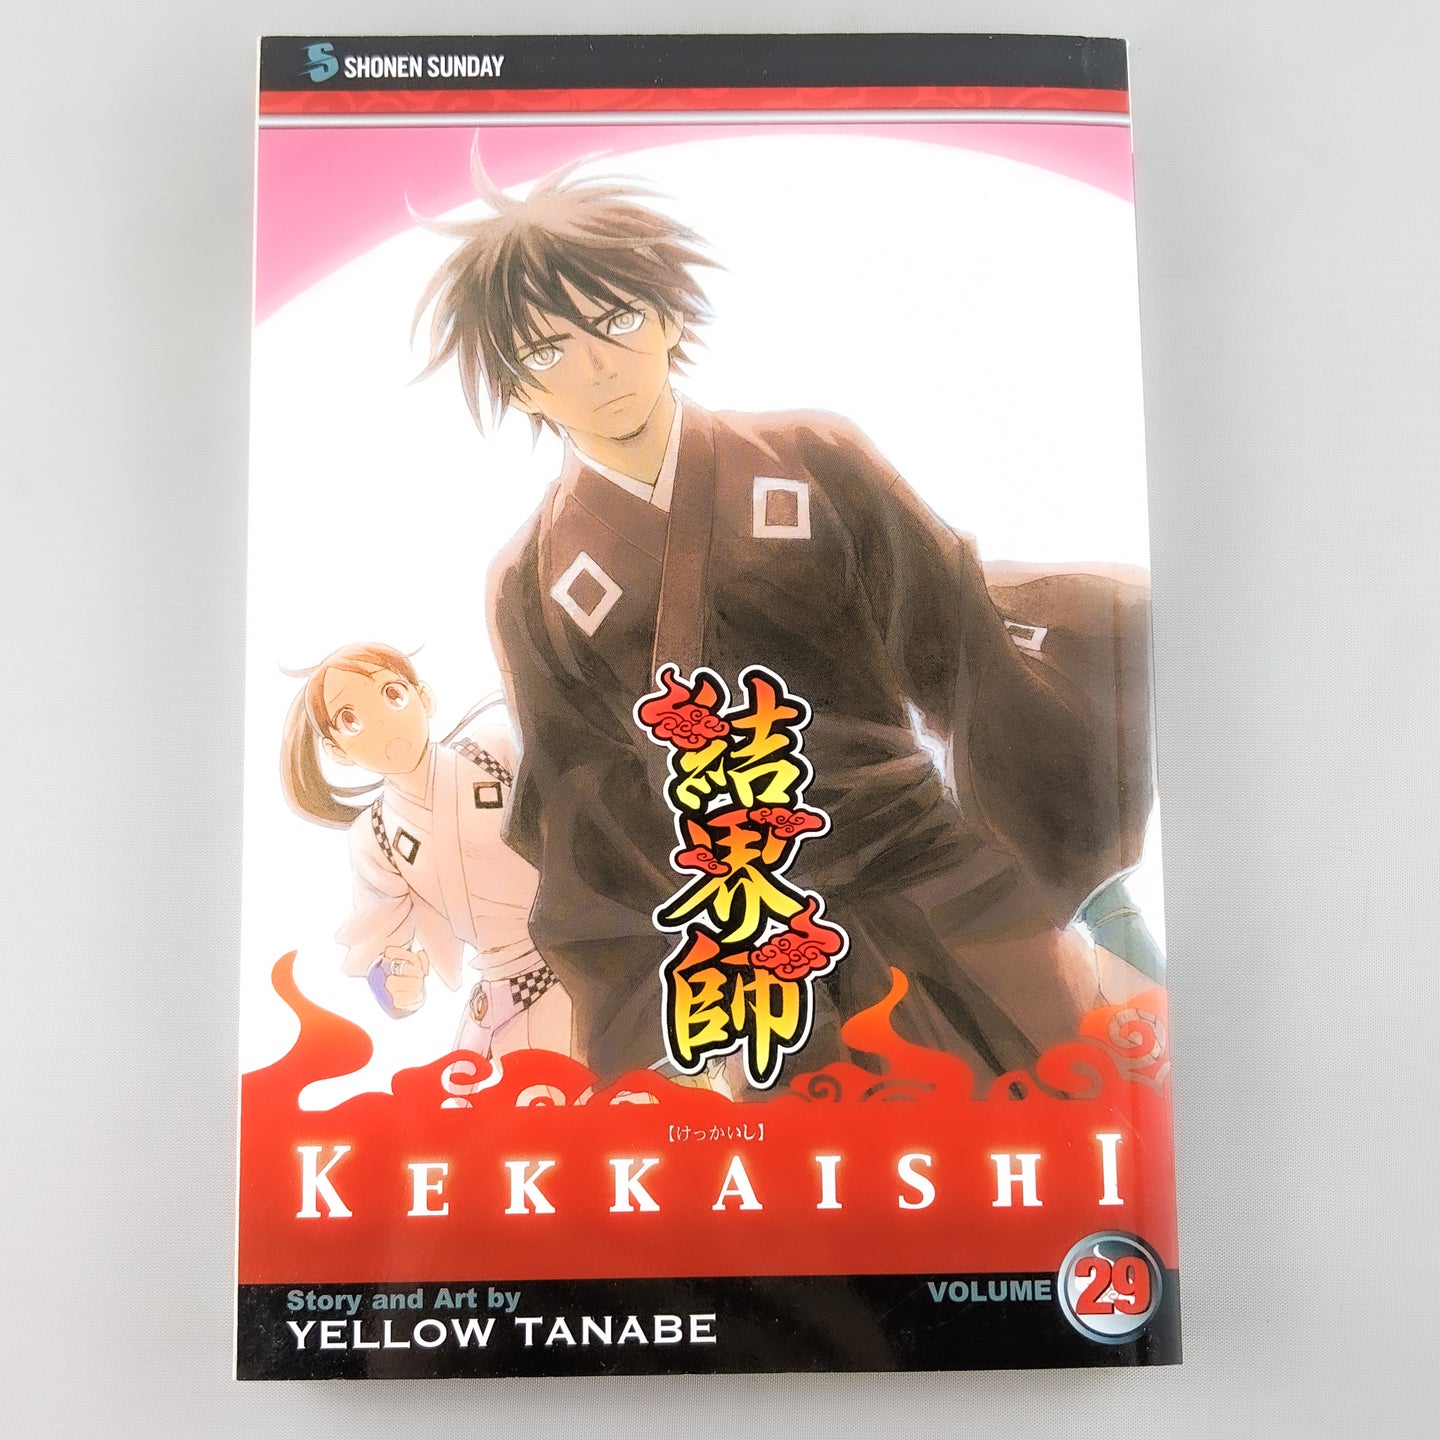 Kekkaishi volume 29. Manga by Yellow Tanabe.